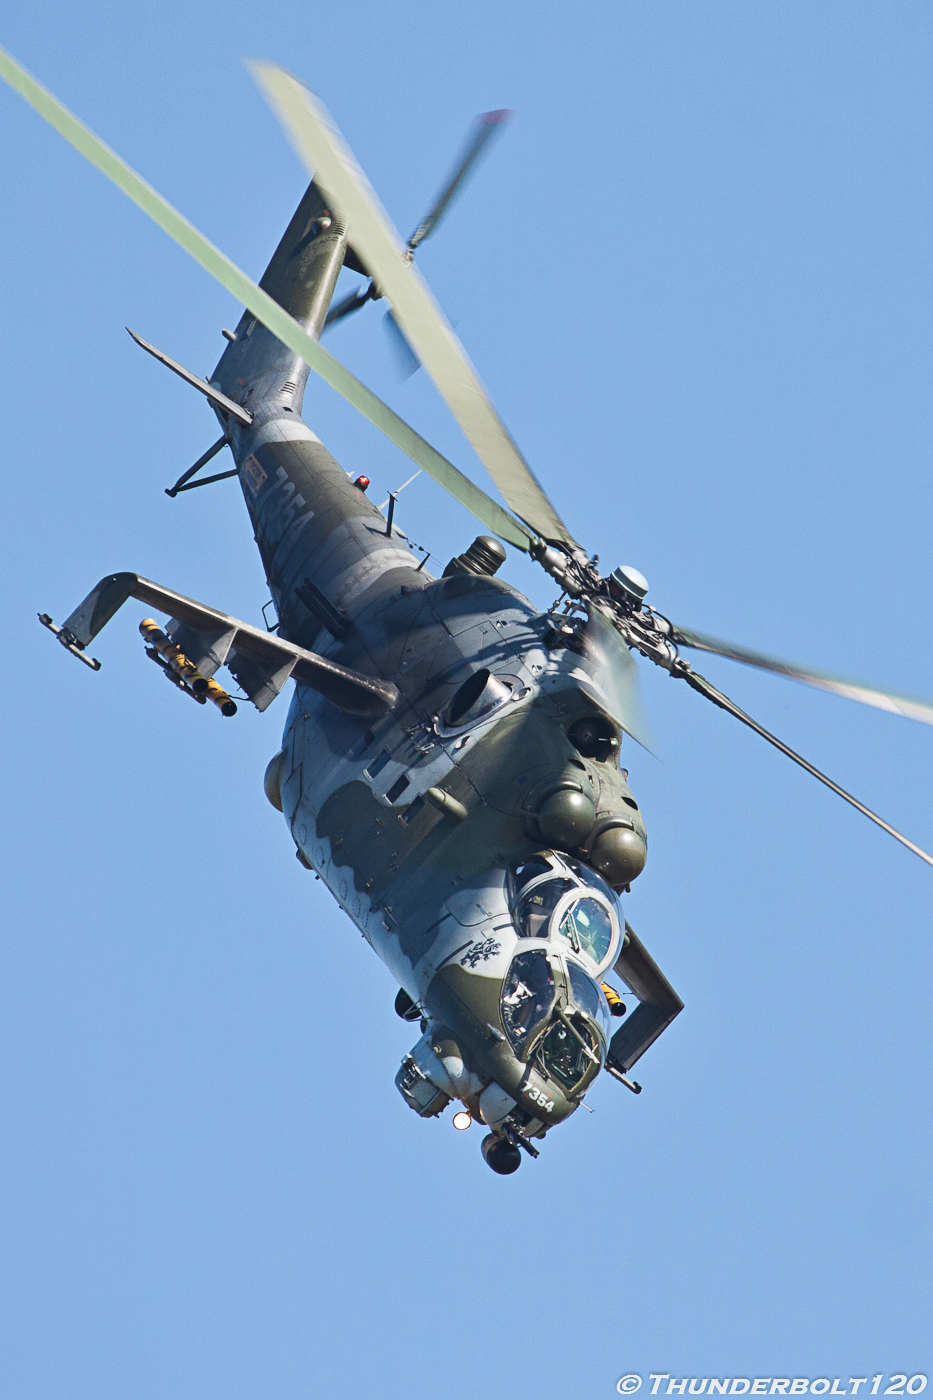 Mi-24V Hind 7354